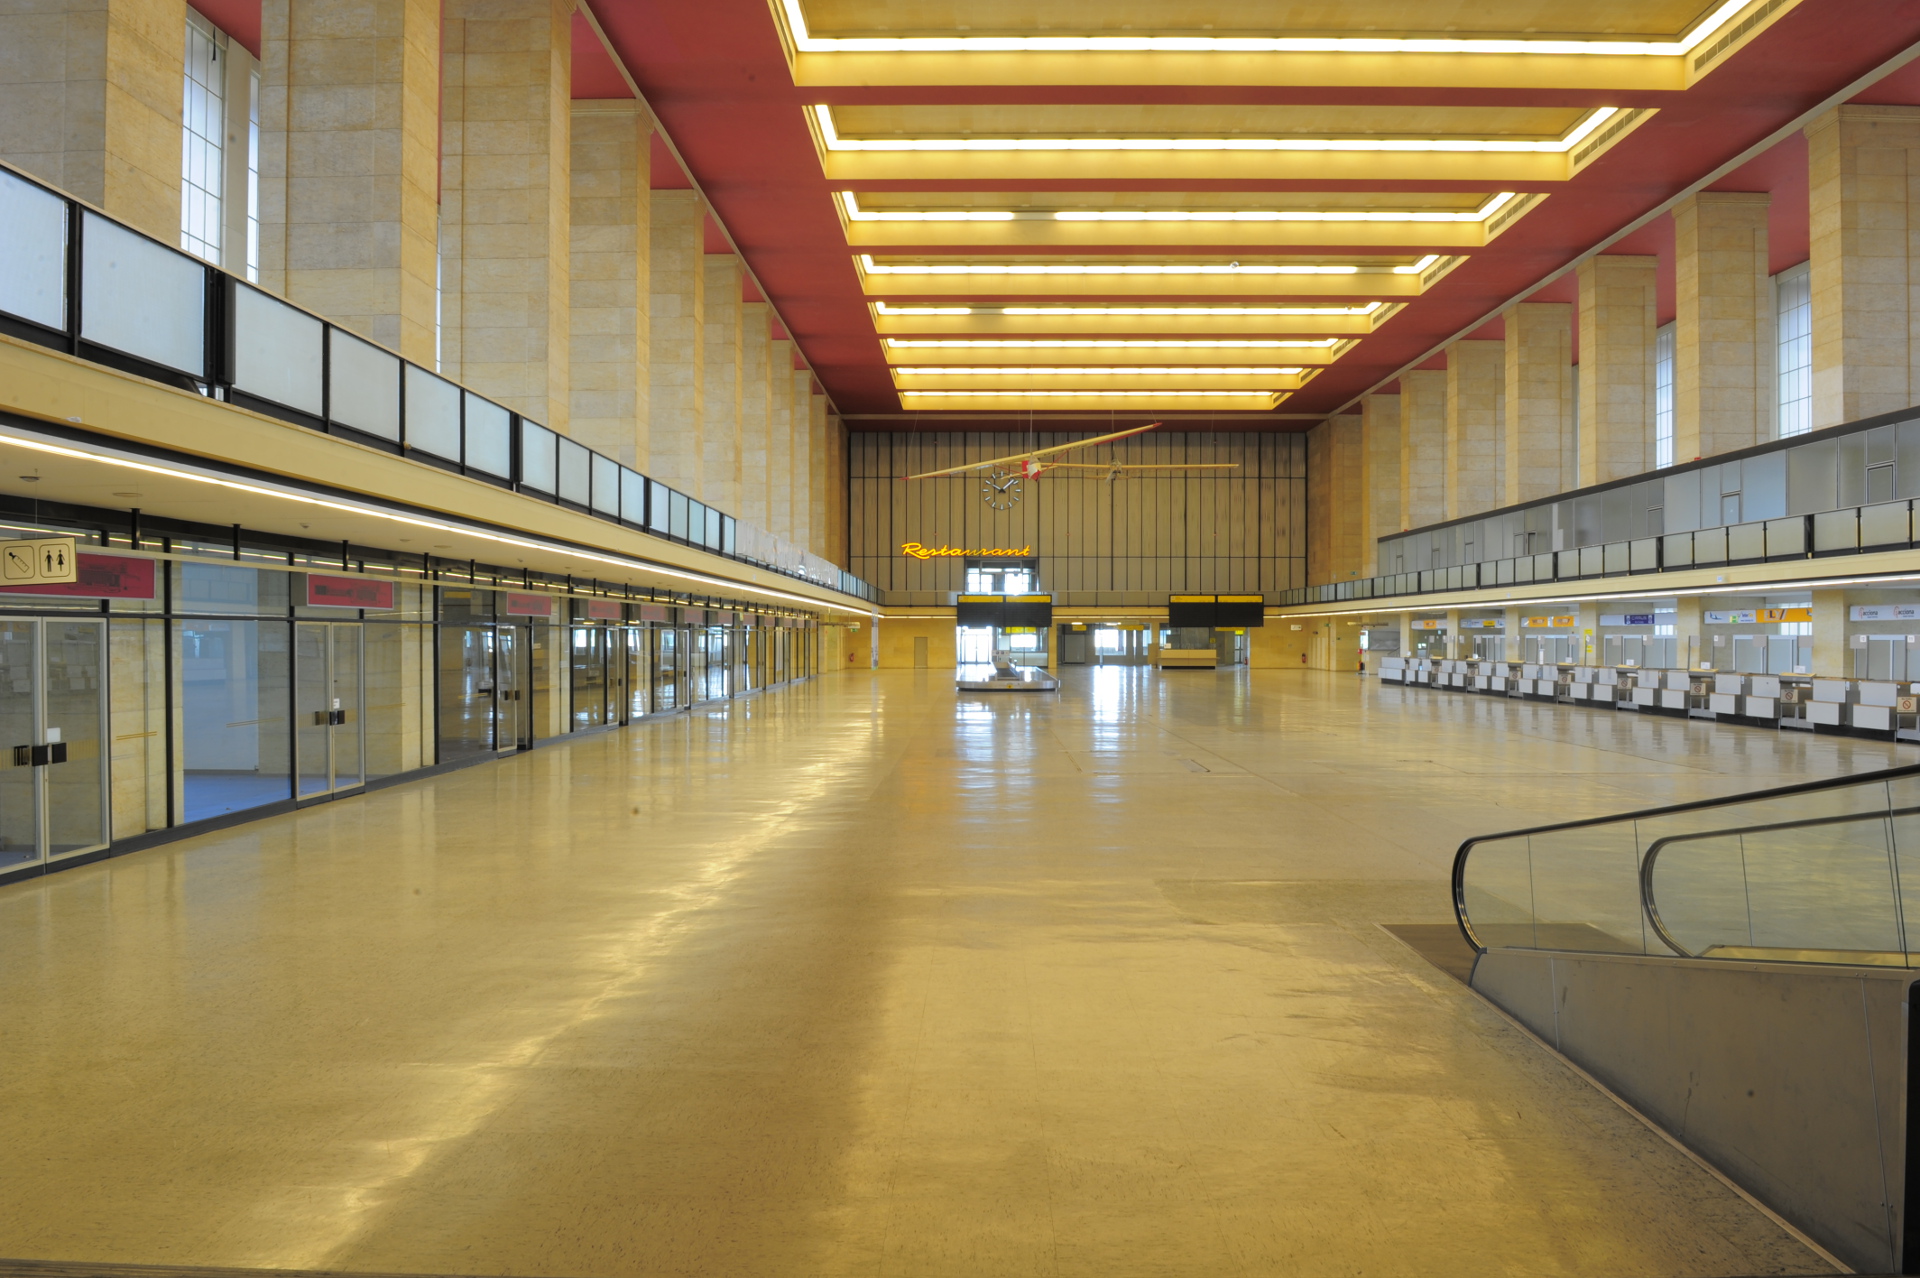 Der Flughafen Berlin Tempelhof von außen. Quelle: 59plus